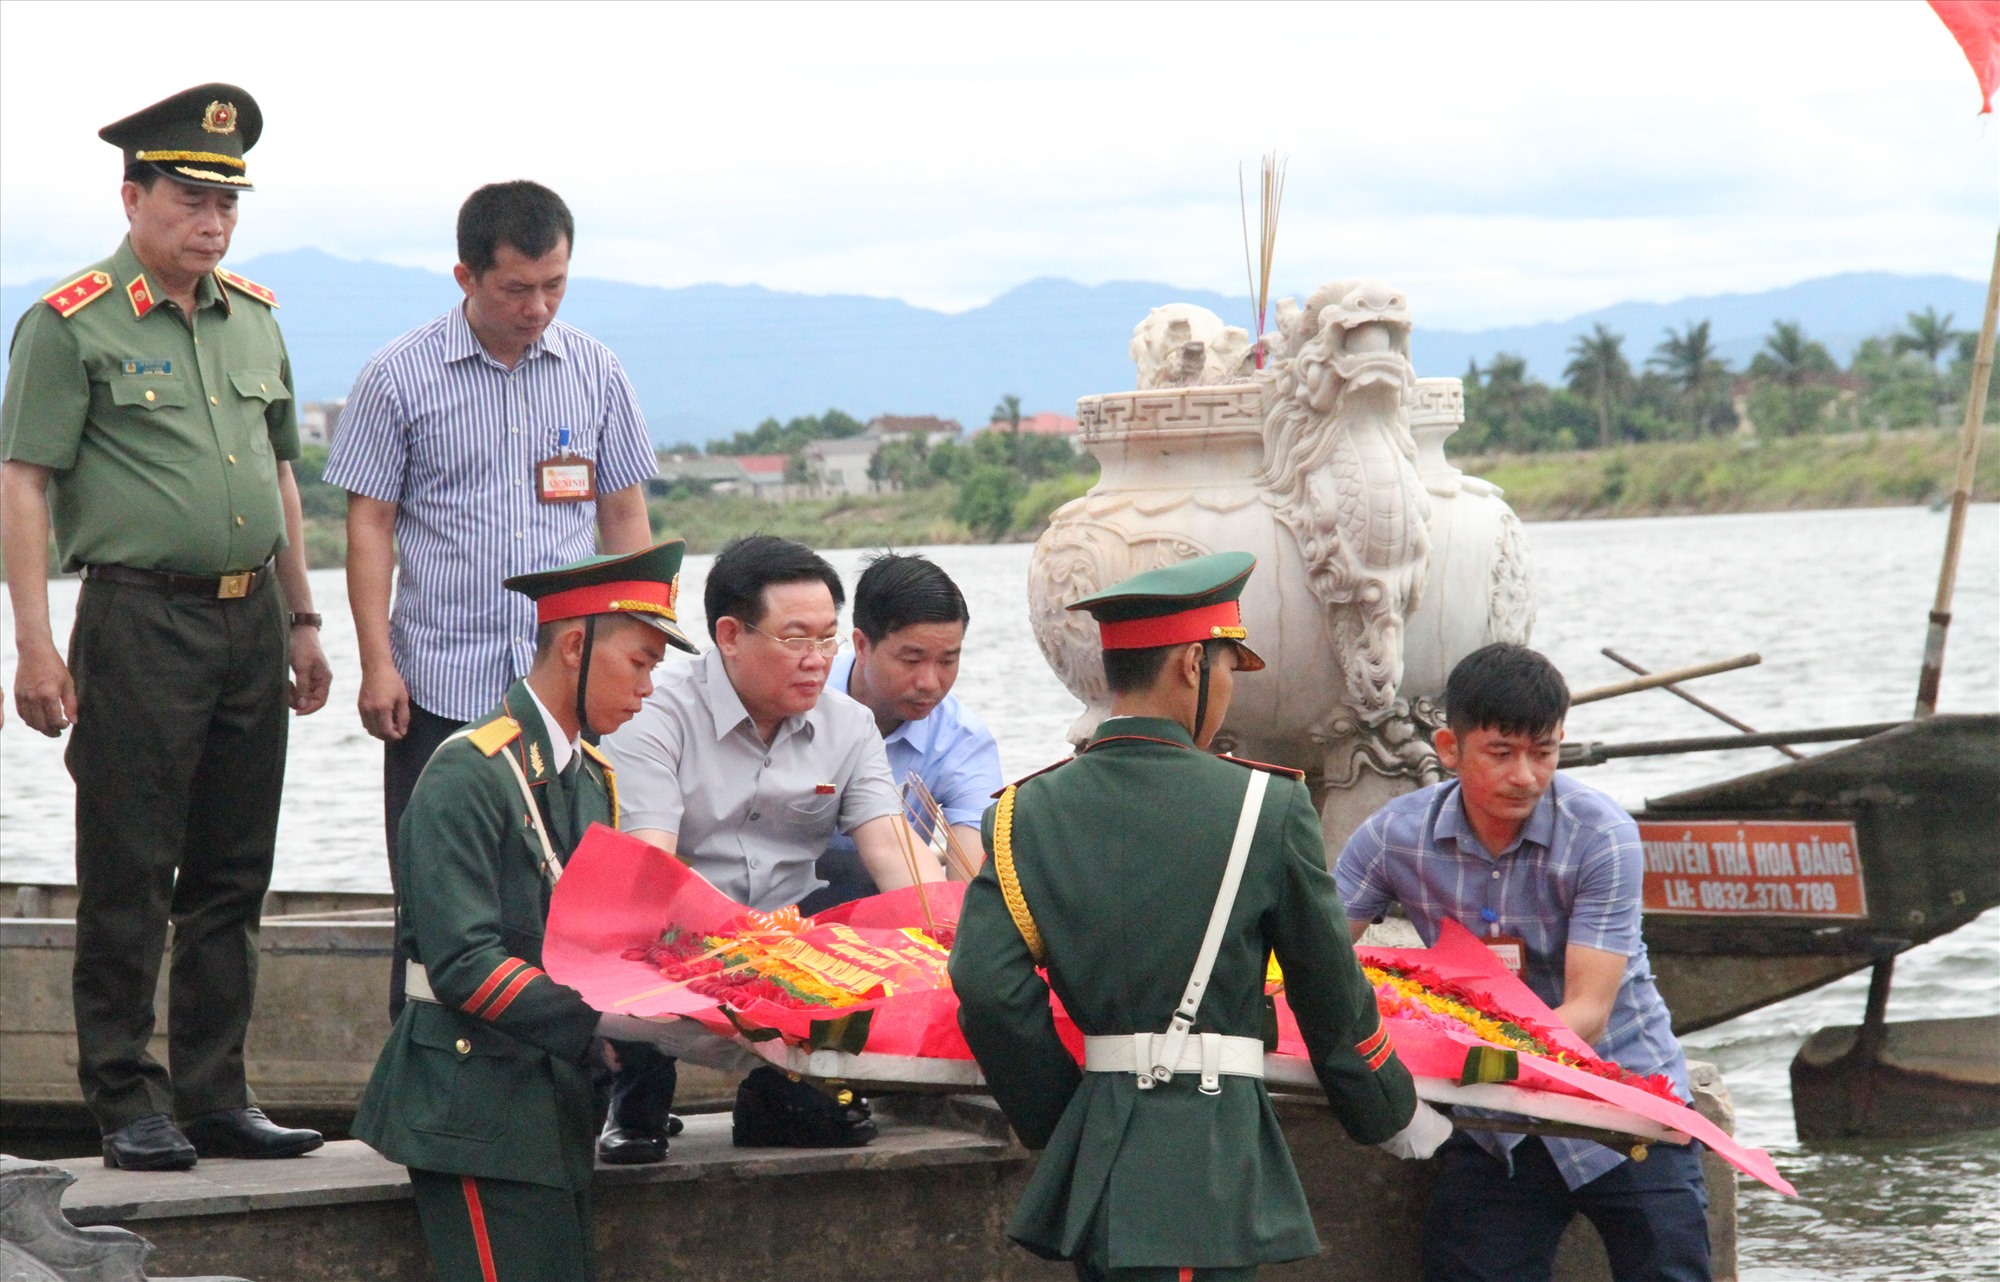 Chủ tịch Quốc hội Vương Đình Huệ thả hoa tri ân các anh hùng liệt sĩ trên sông Thạch Hãn - Ảnh: MĐ